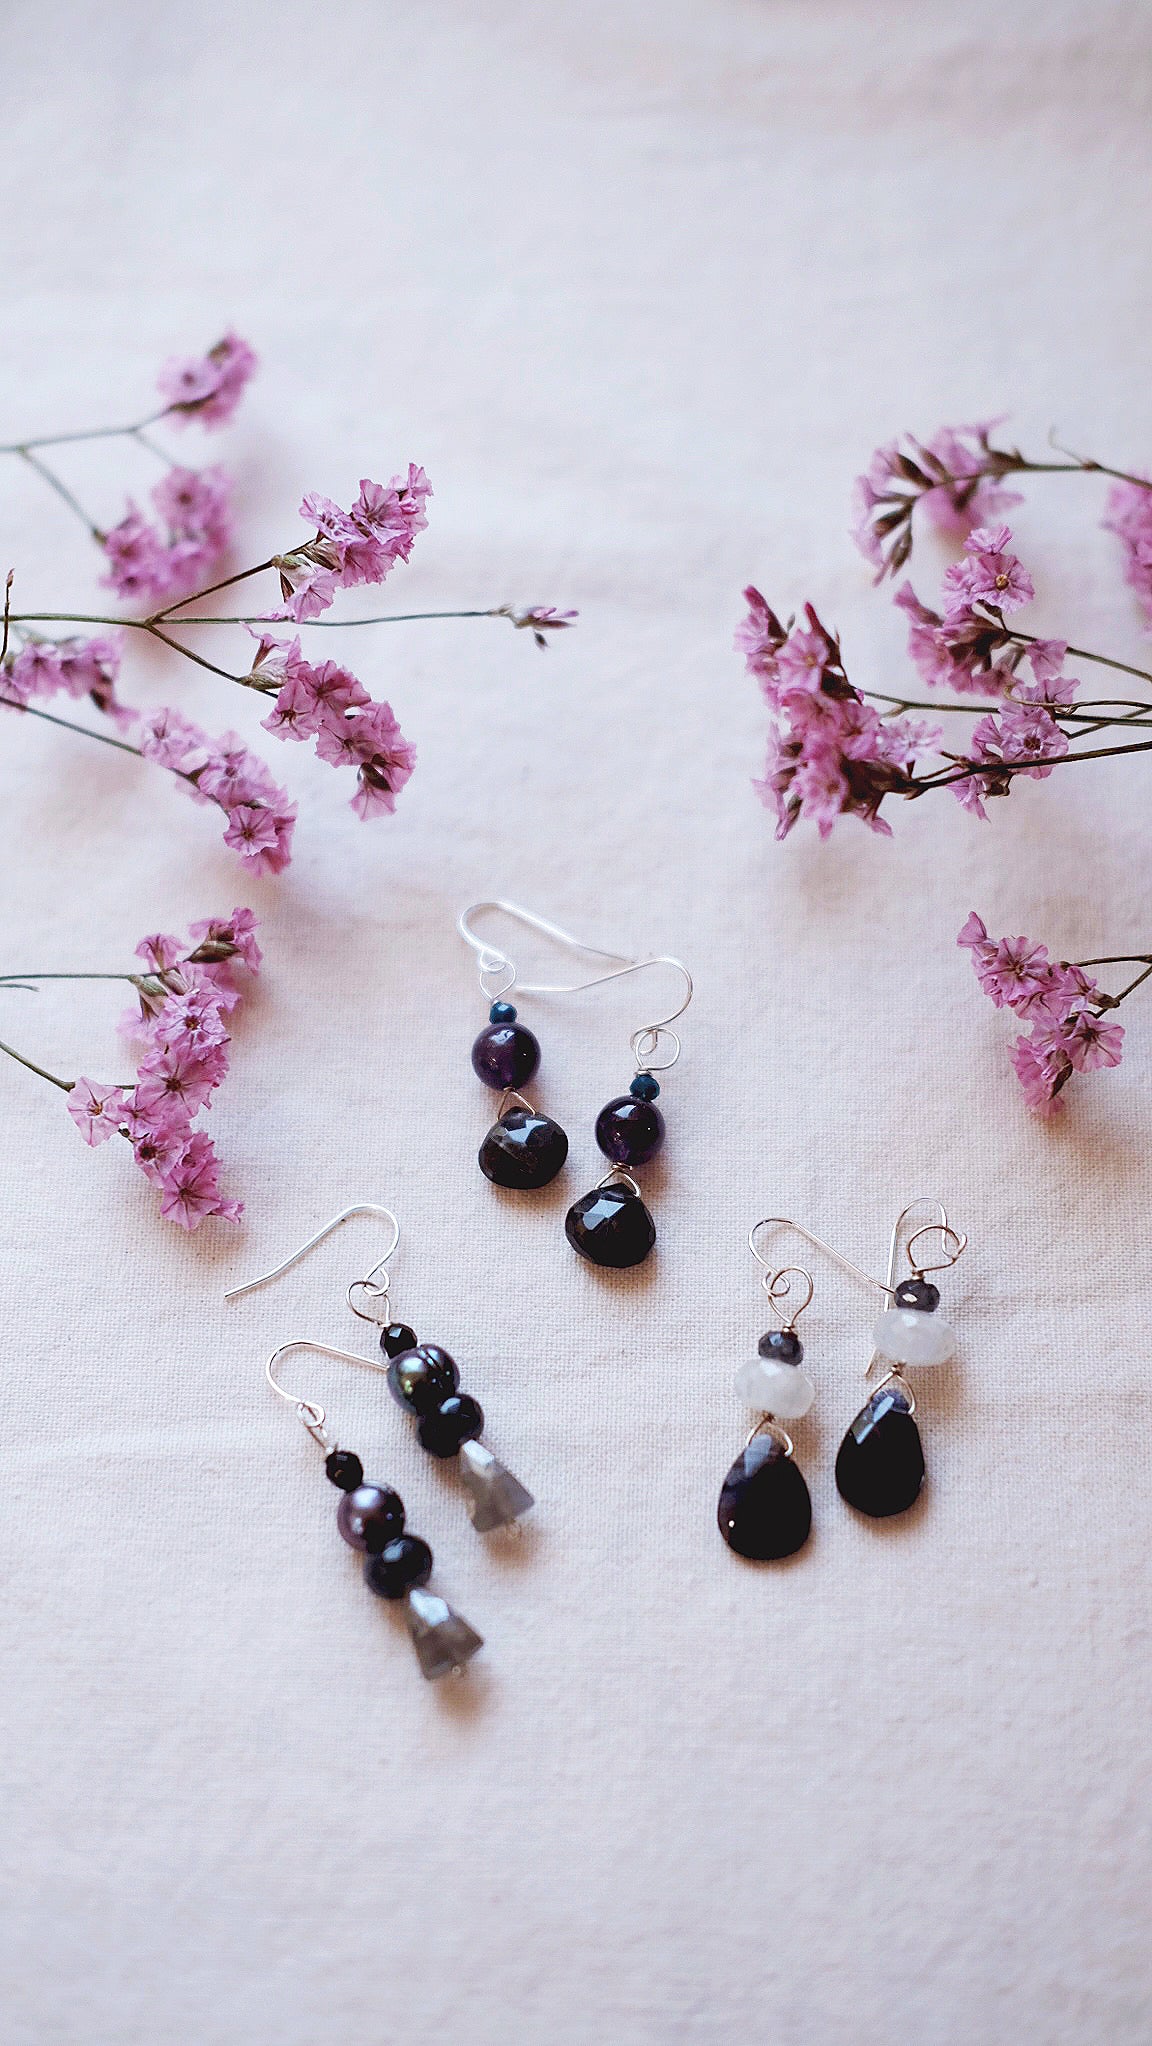 New Moon + Black Moonstone + Amethyst + Spinel gemstone earrings